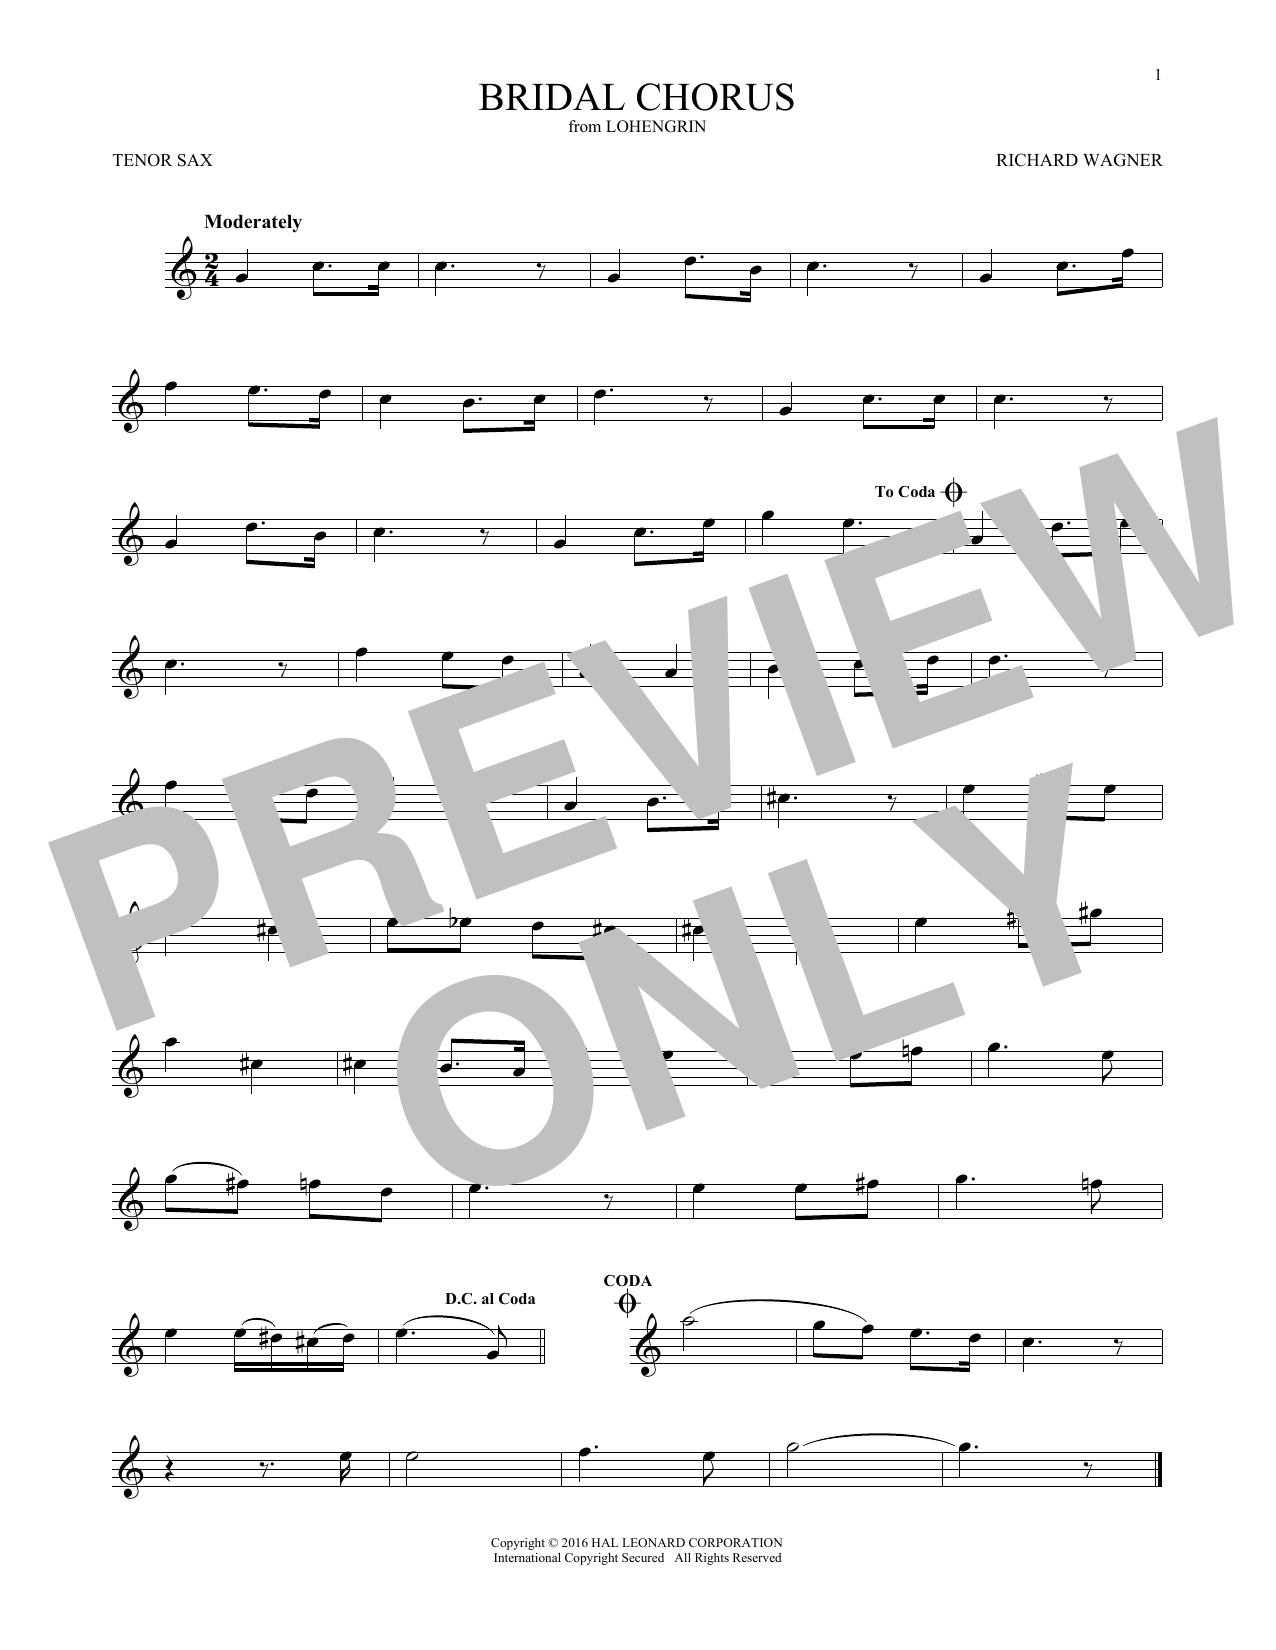 Download Richard Wagner Bridal Chorus Sheet Music